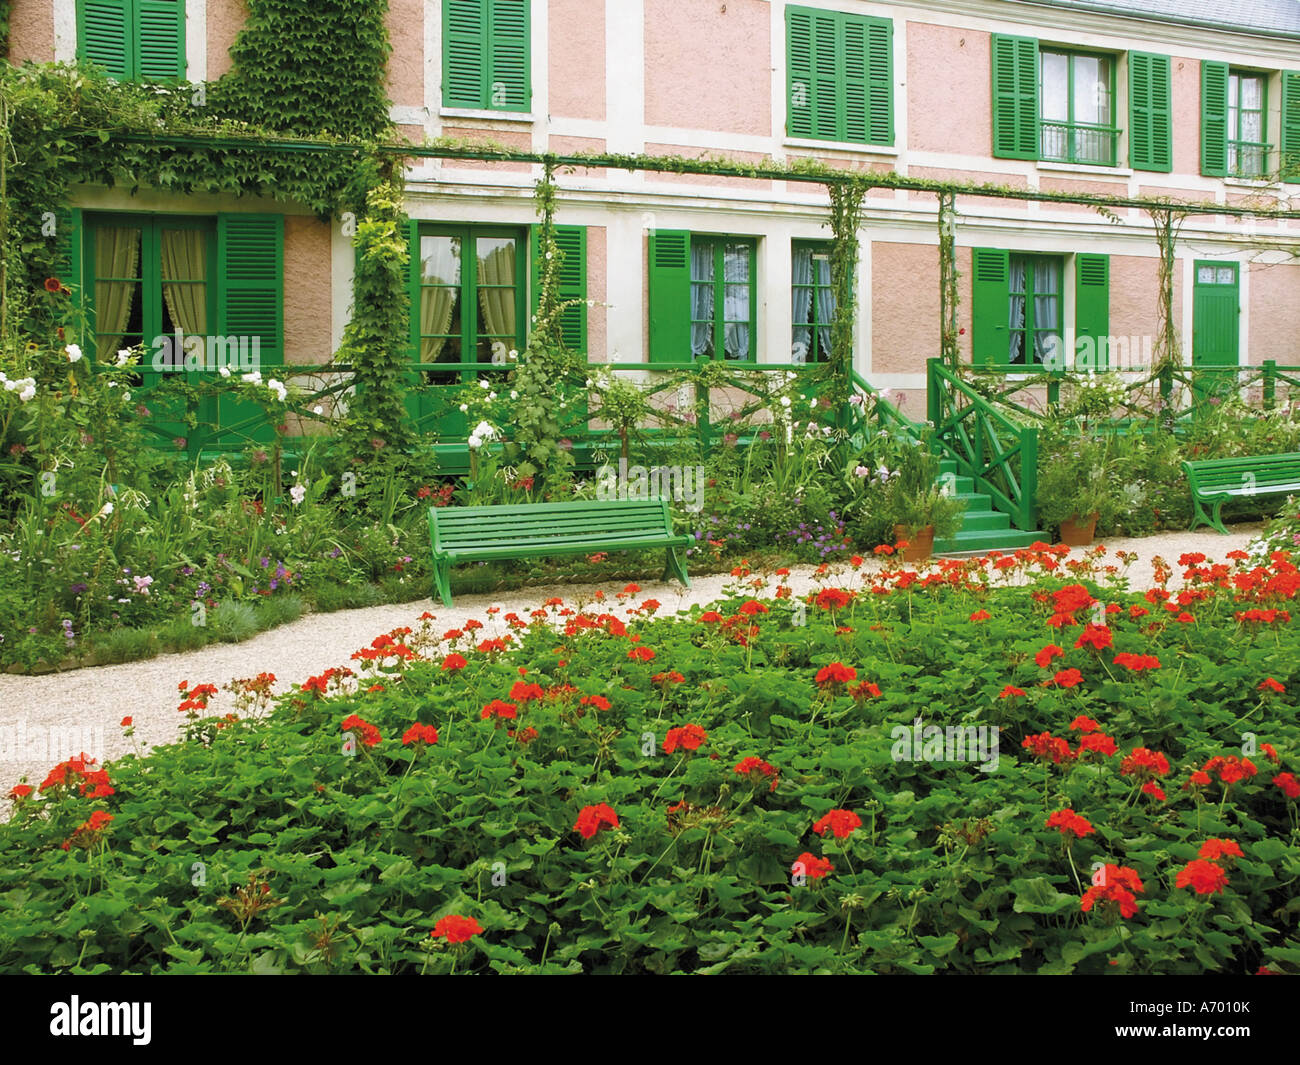 Maison et jardin du peintre impressionniste Claude Monet GIVERNY Eure Normandie France Europe Banque D'Images